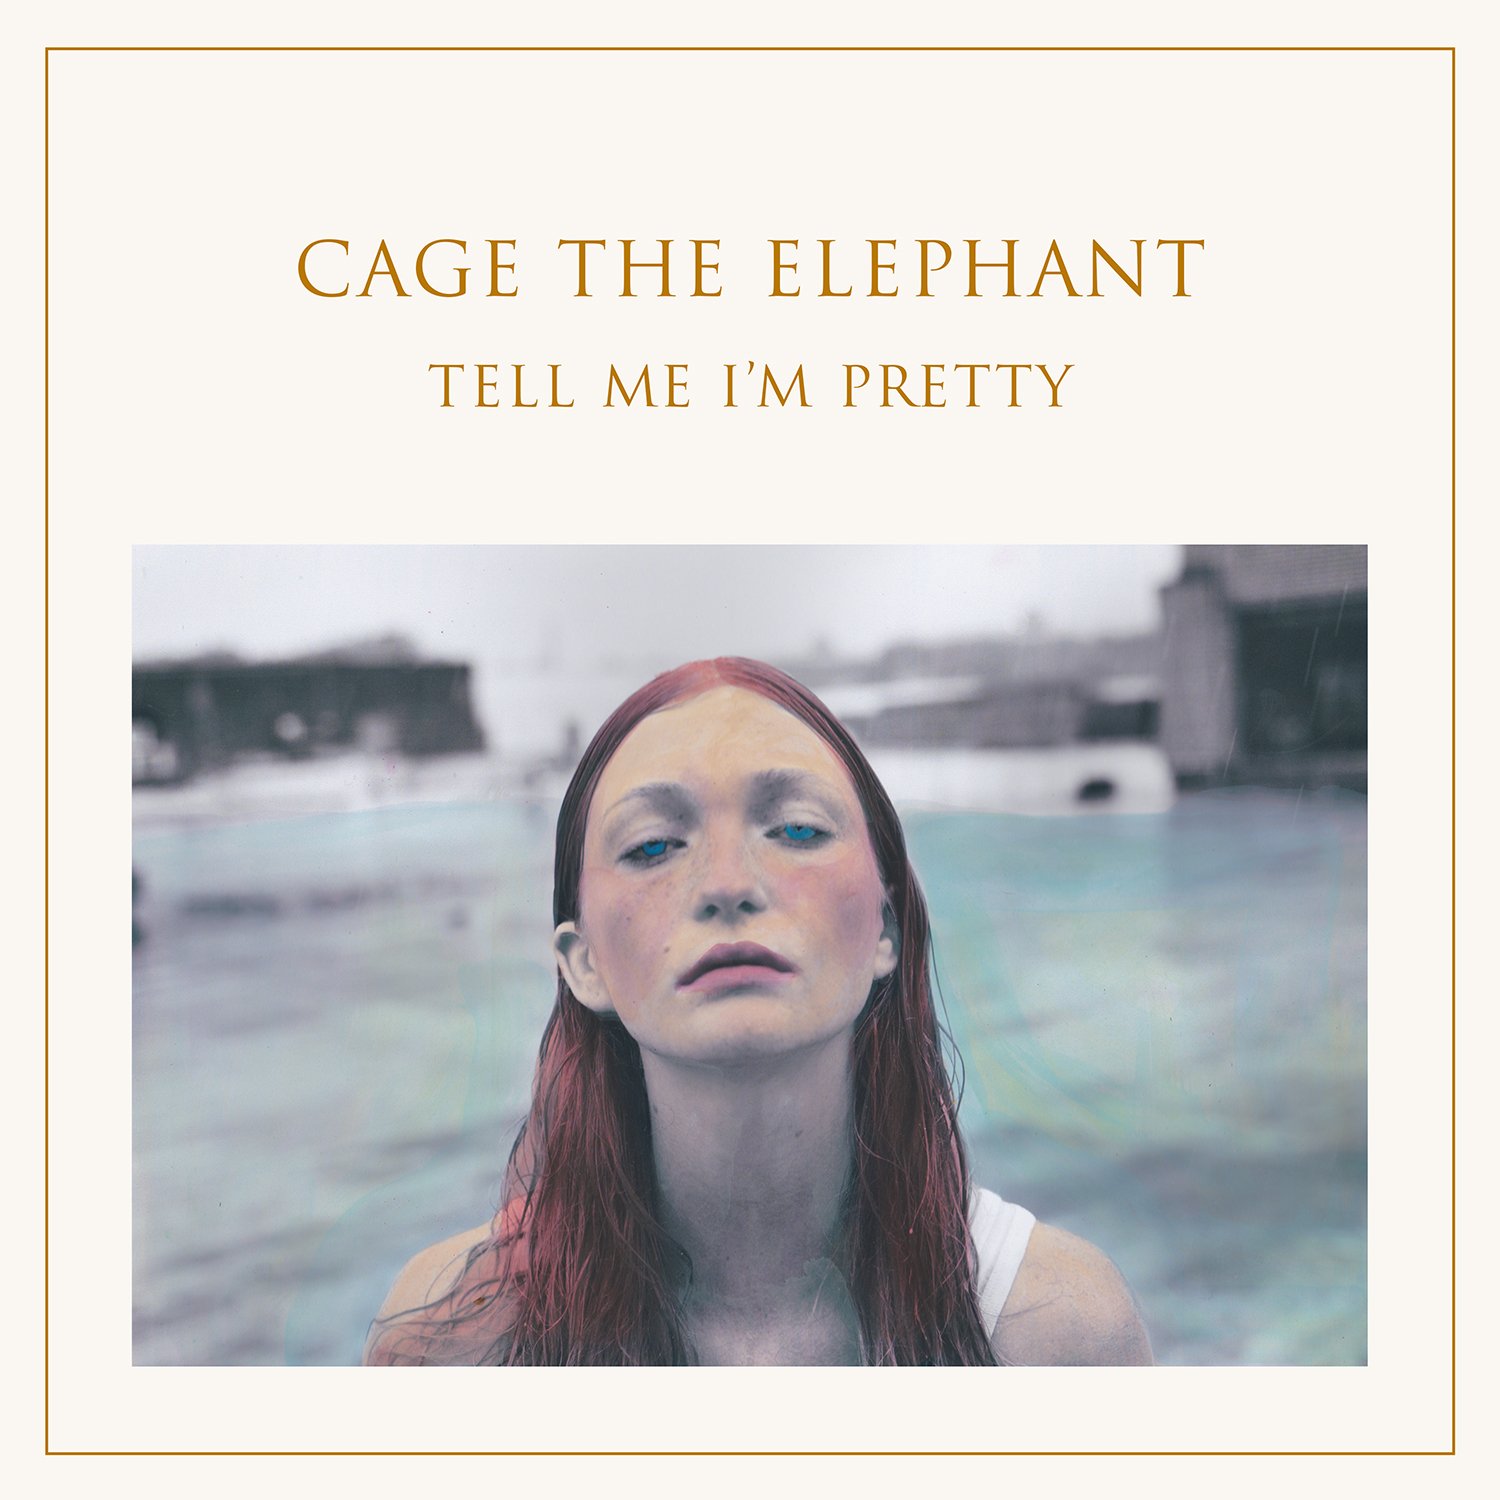 Capa do álbum Tell Me I'm Pretty da banda Cage The Elephant. É uma capa branca, com o nome da banda escrito no topo e logo abaixo o nome do cd, com letras douradas. Do meio pra baixo vemos a foto de uma mulher branca, ruiva e de olhos azul piscina